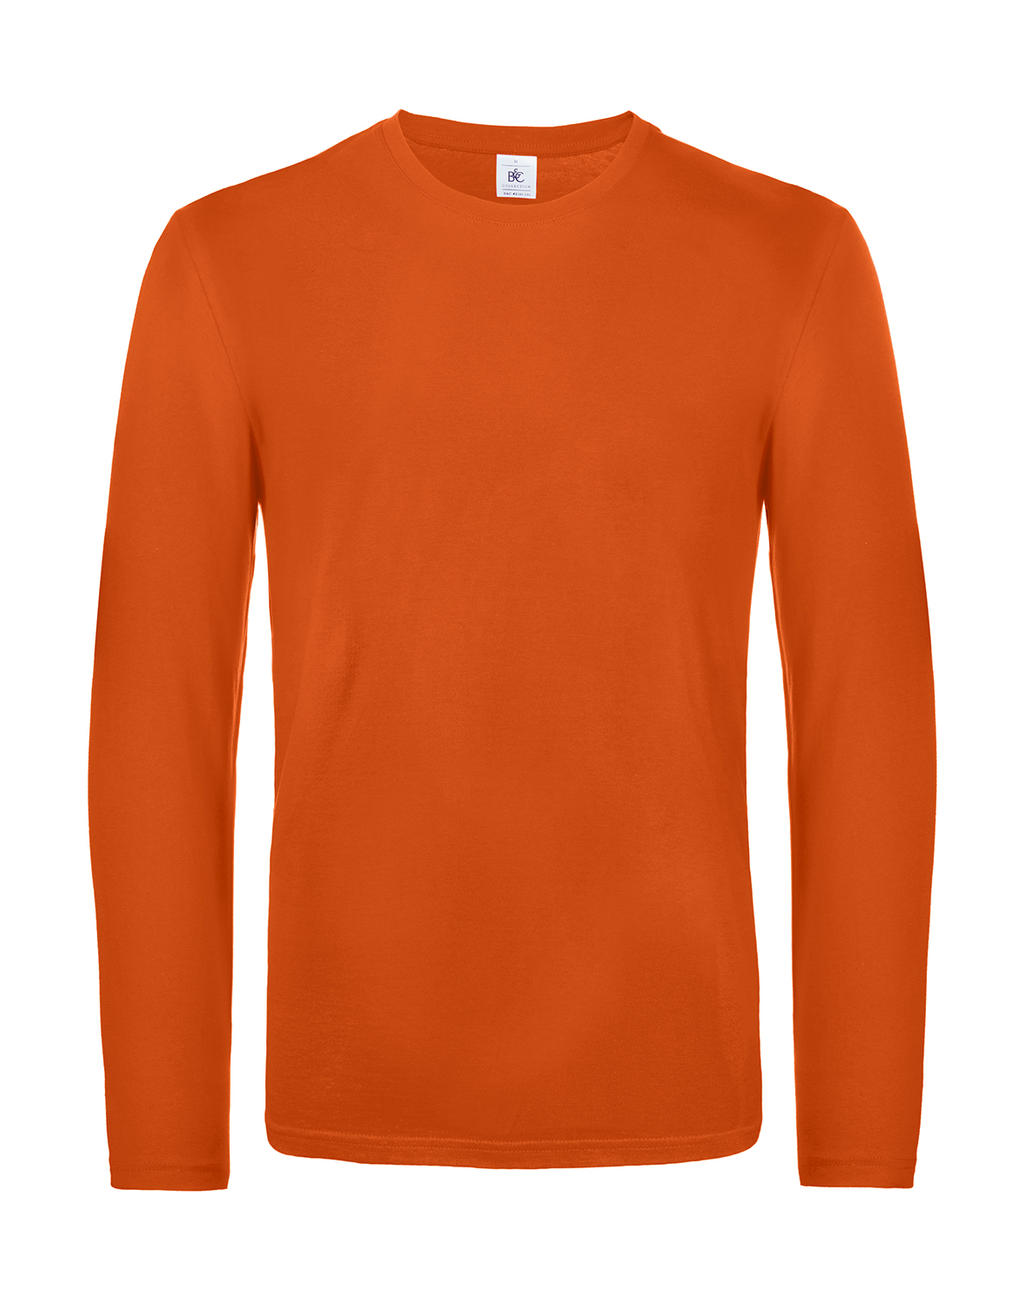  #E190 LSL in Farbe Urban Orange